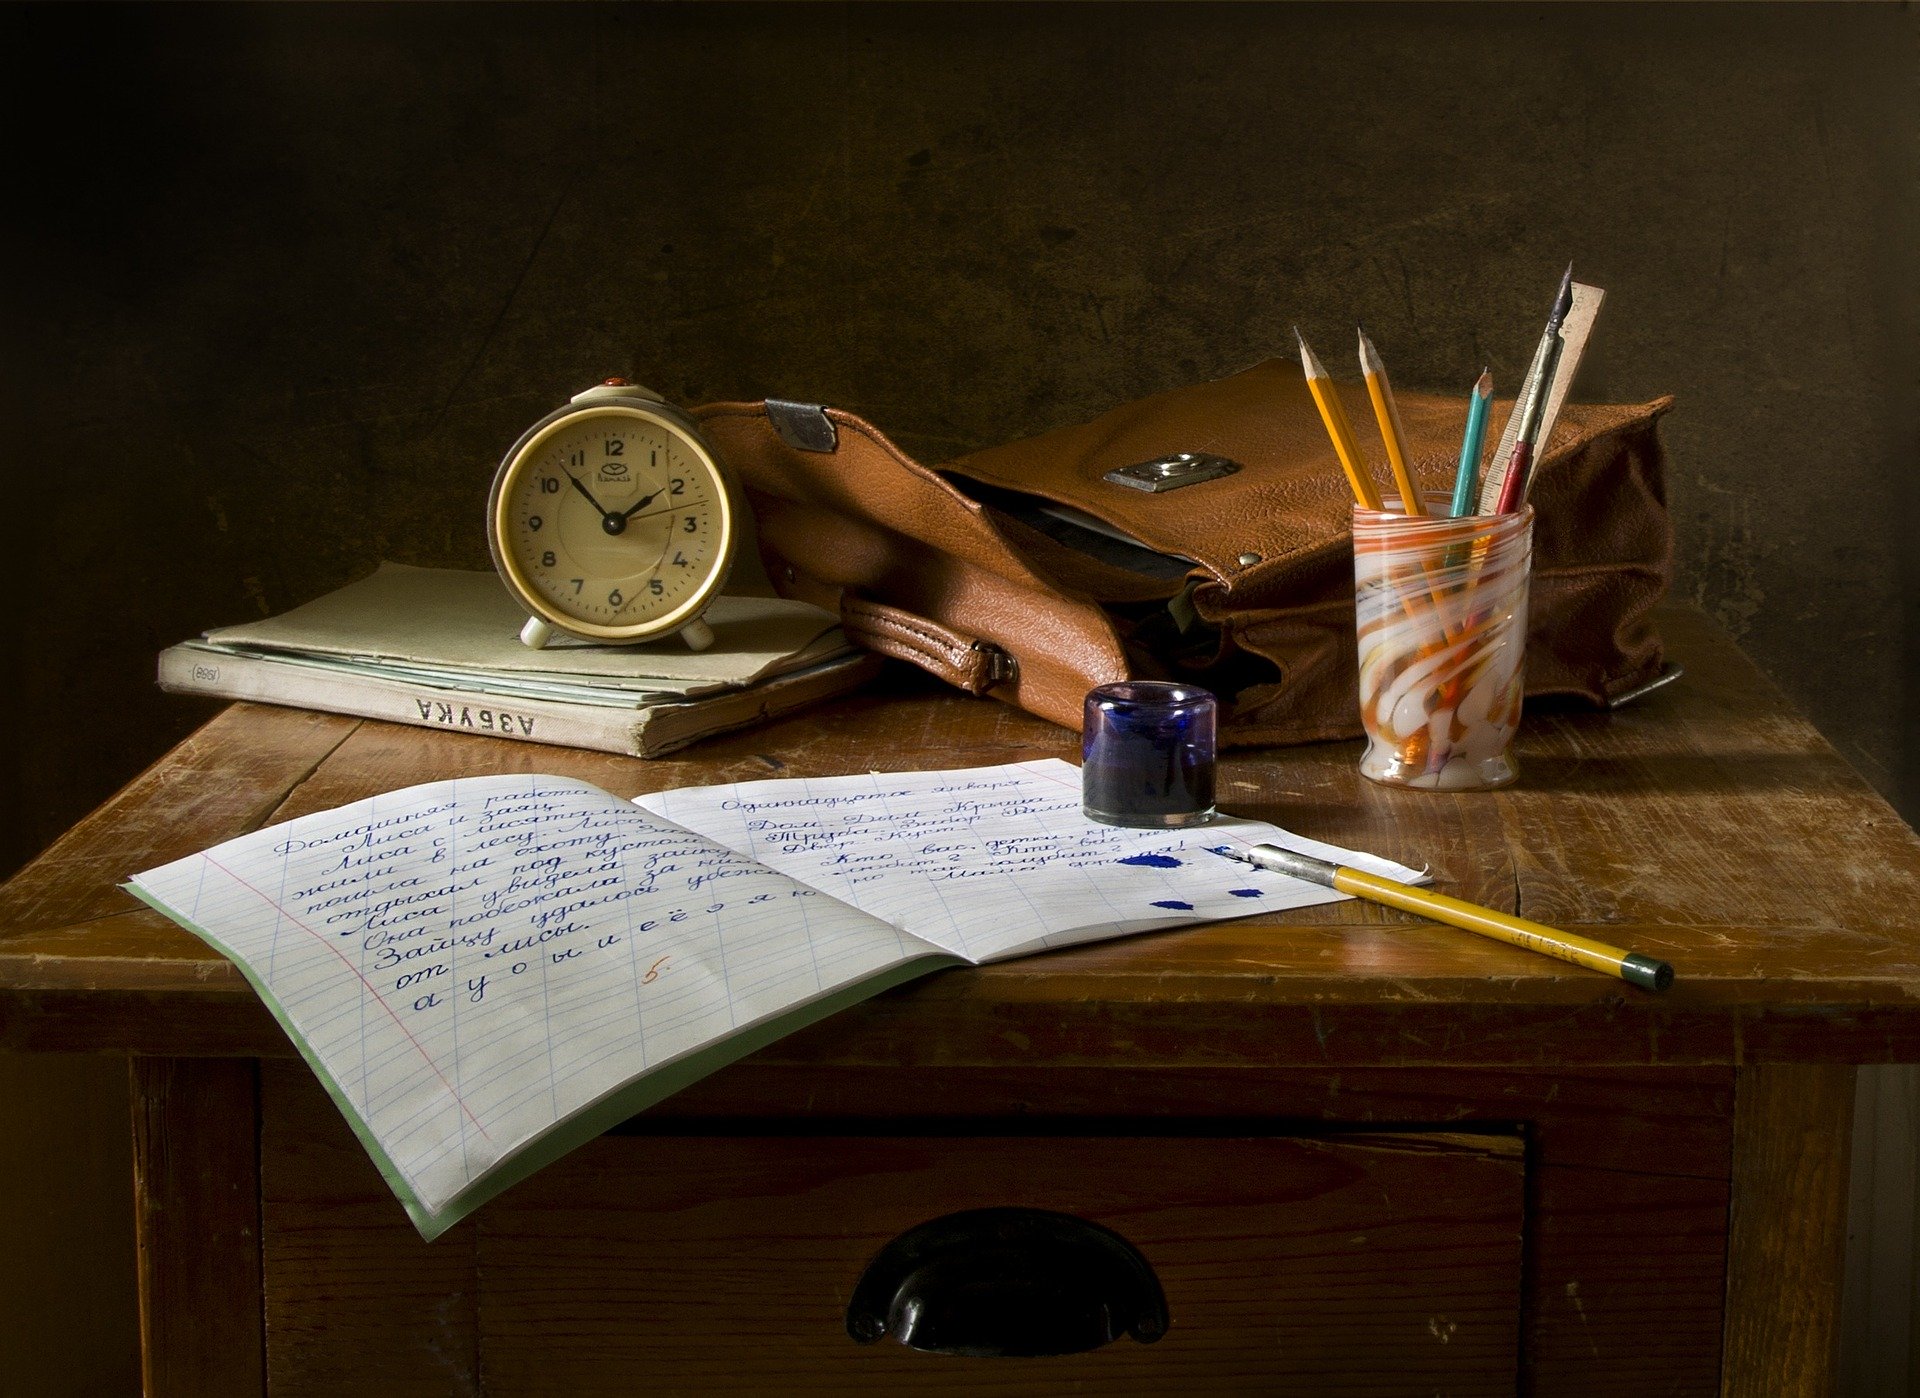 Un bodegón compuesto por una libreta, una pluma con su bote de tinta, una cartera escolar abierta y un reloj analógico clásico.